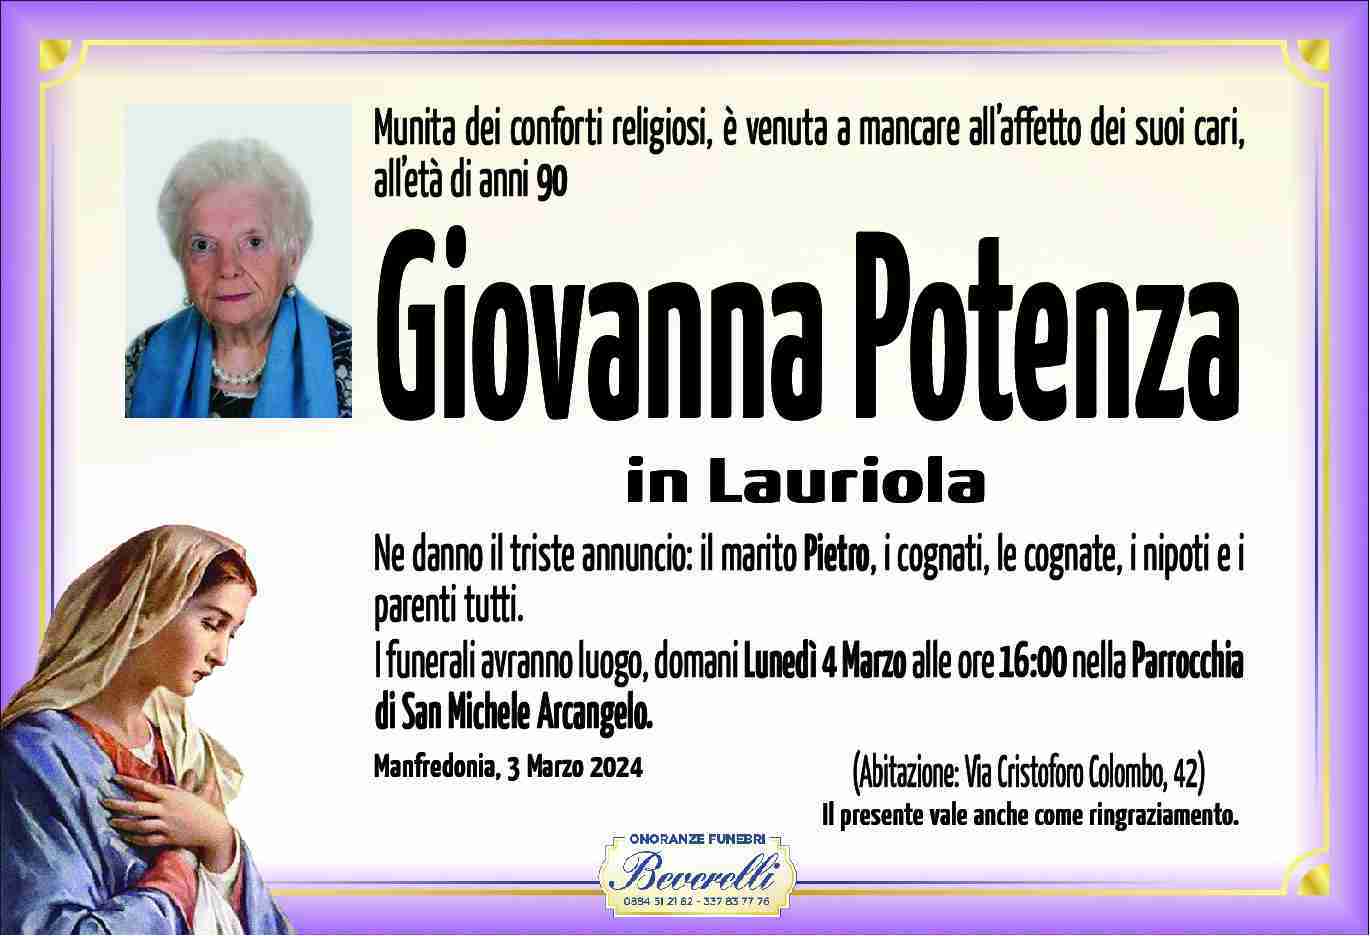 Giovanna Potenza